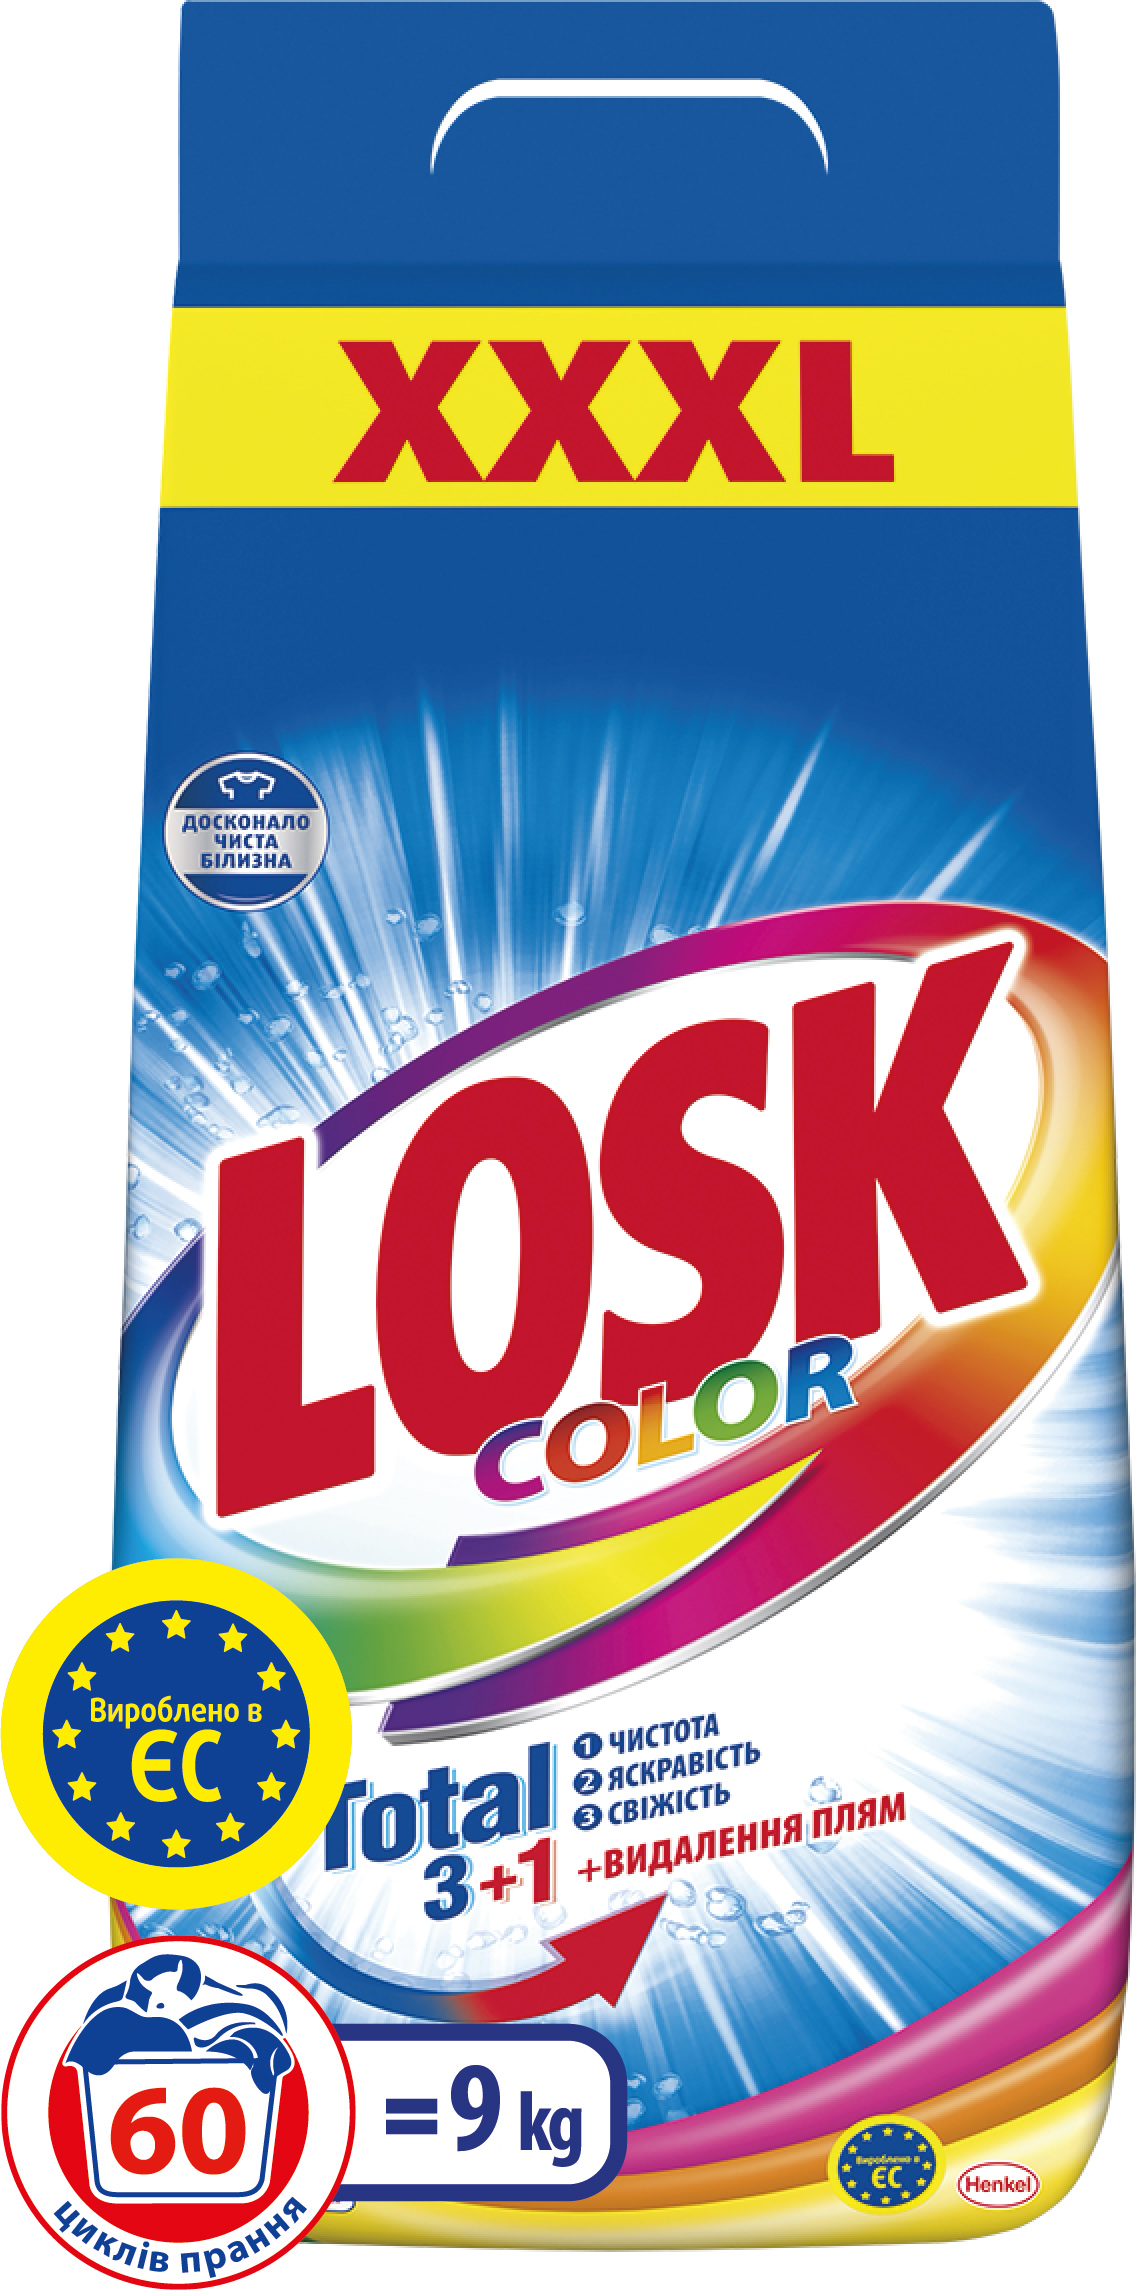  порошок Losk Колор 9 кг (9000100440585) – фото, отзывы .